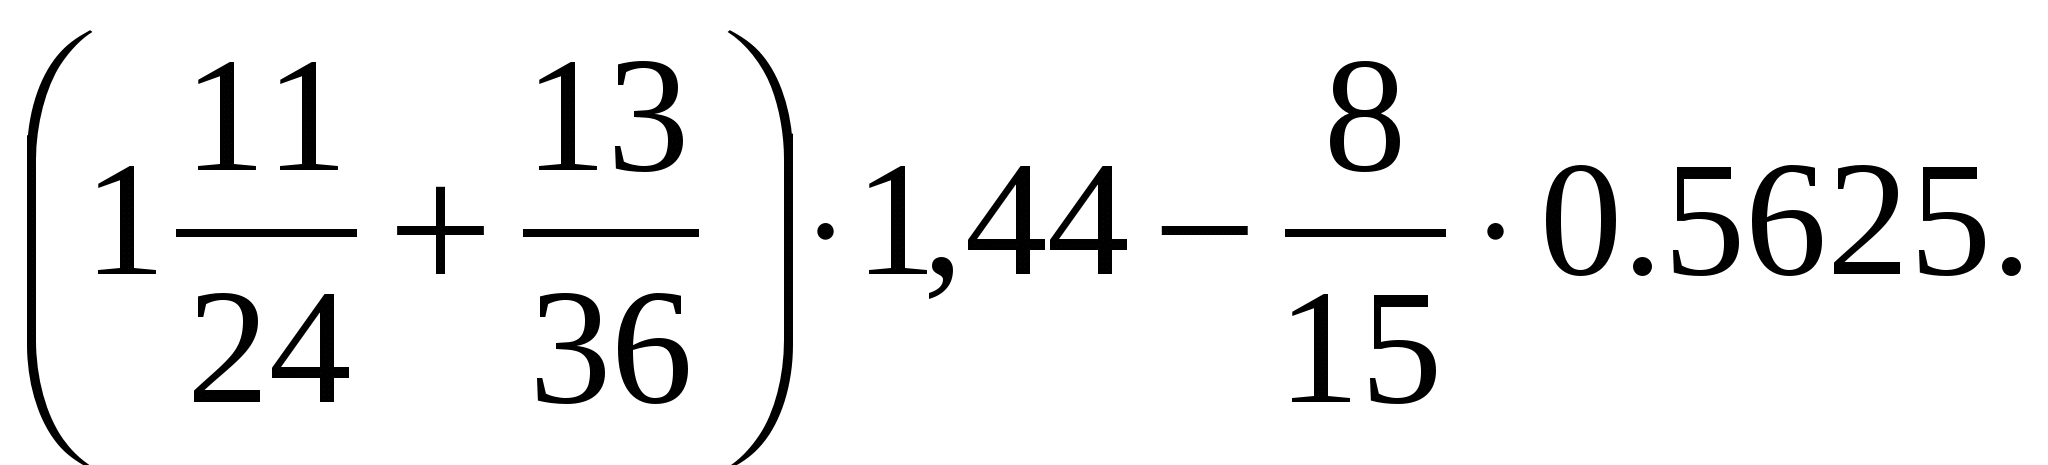 1 11 24 13 36. (1 11/24+13/36) Х1,44-8/15 х0,5625. 1 11/24+13/36 1.44-8/15 0.5625 Решение. (1 11/24 + 13/36) Х 1,44 - 8/15 Х 0,5625 = 2,32.. Математика 6 класс (1 11/24 +13/36)*1,44-8/15*0,5625.